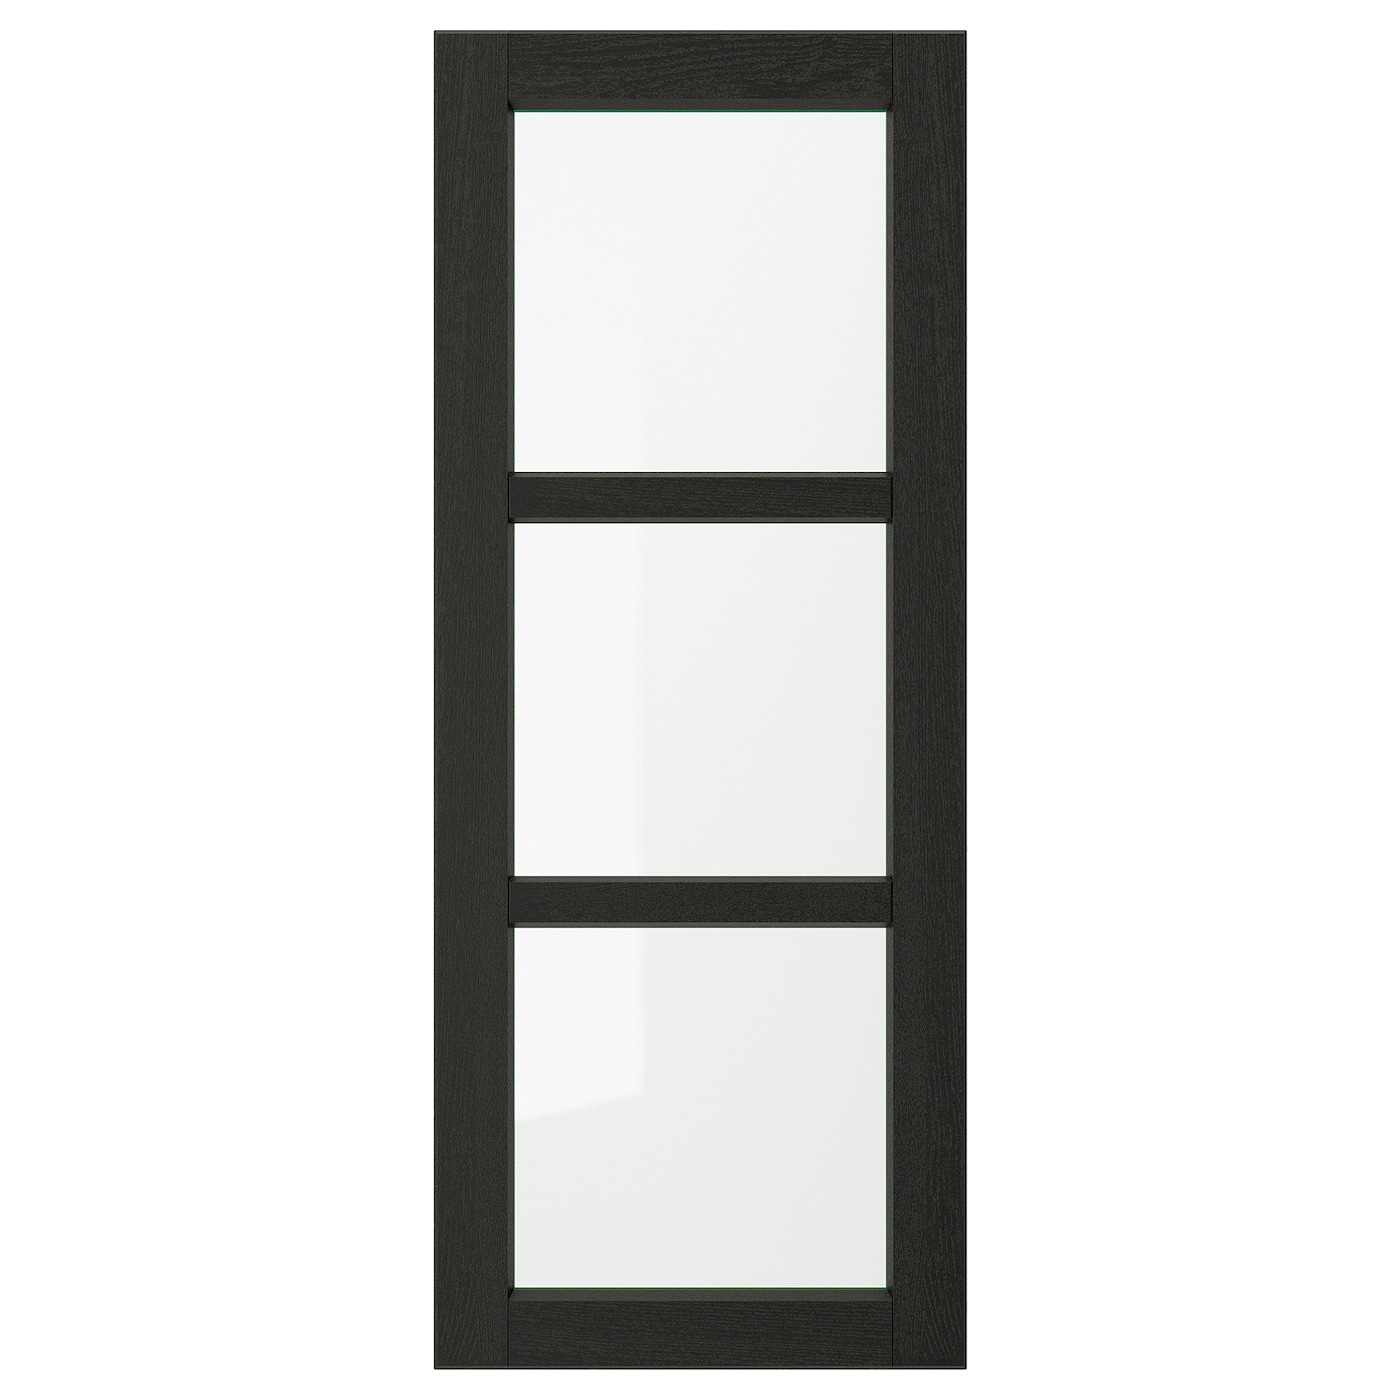 Дверца со стеклом - IKEA LERHYTTAN, 100х40 см, черный, ЛЕРХЮТТАН ИКЕА